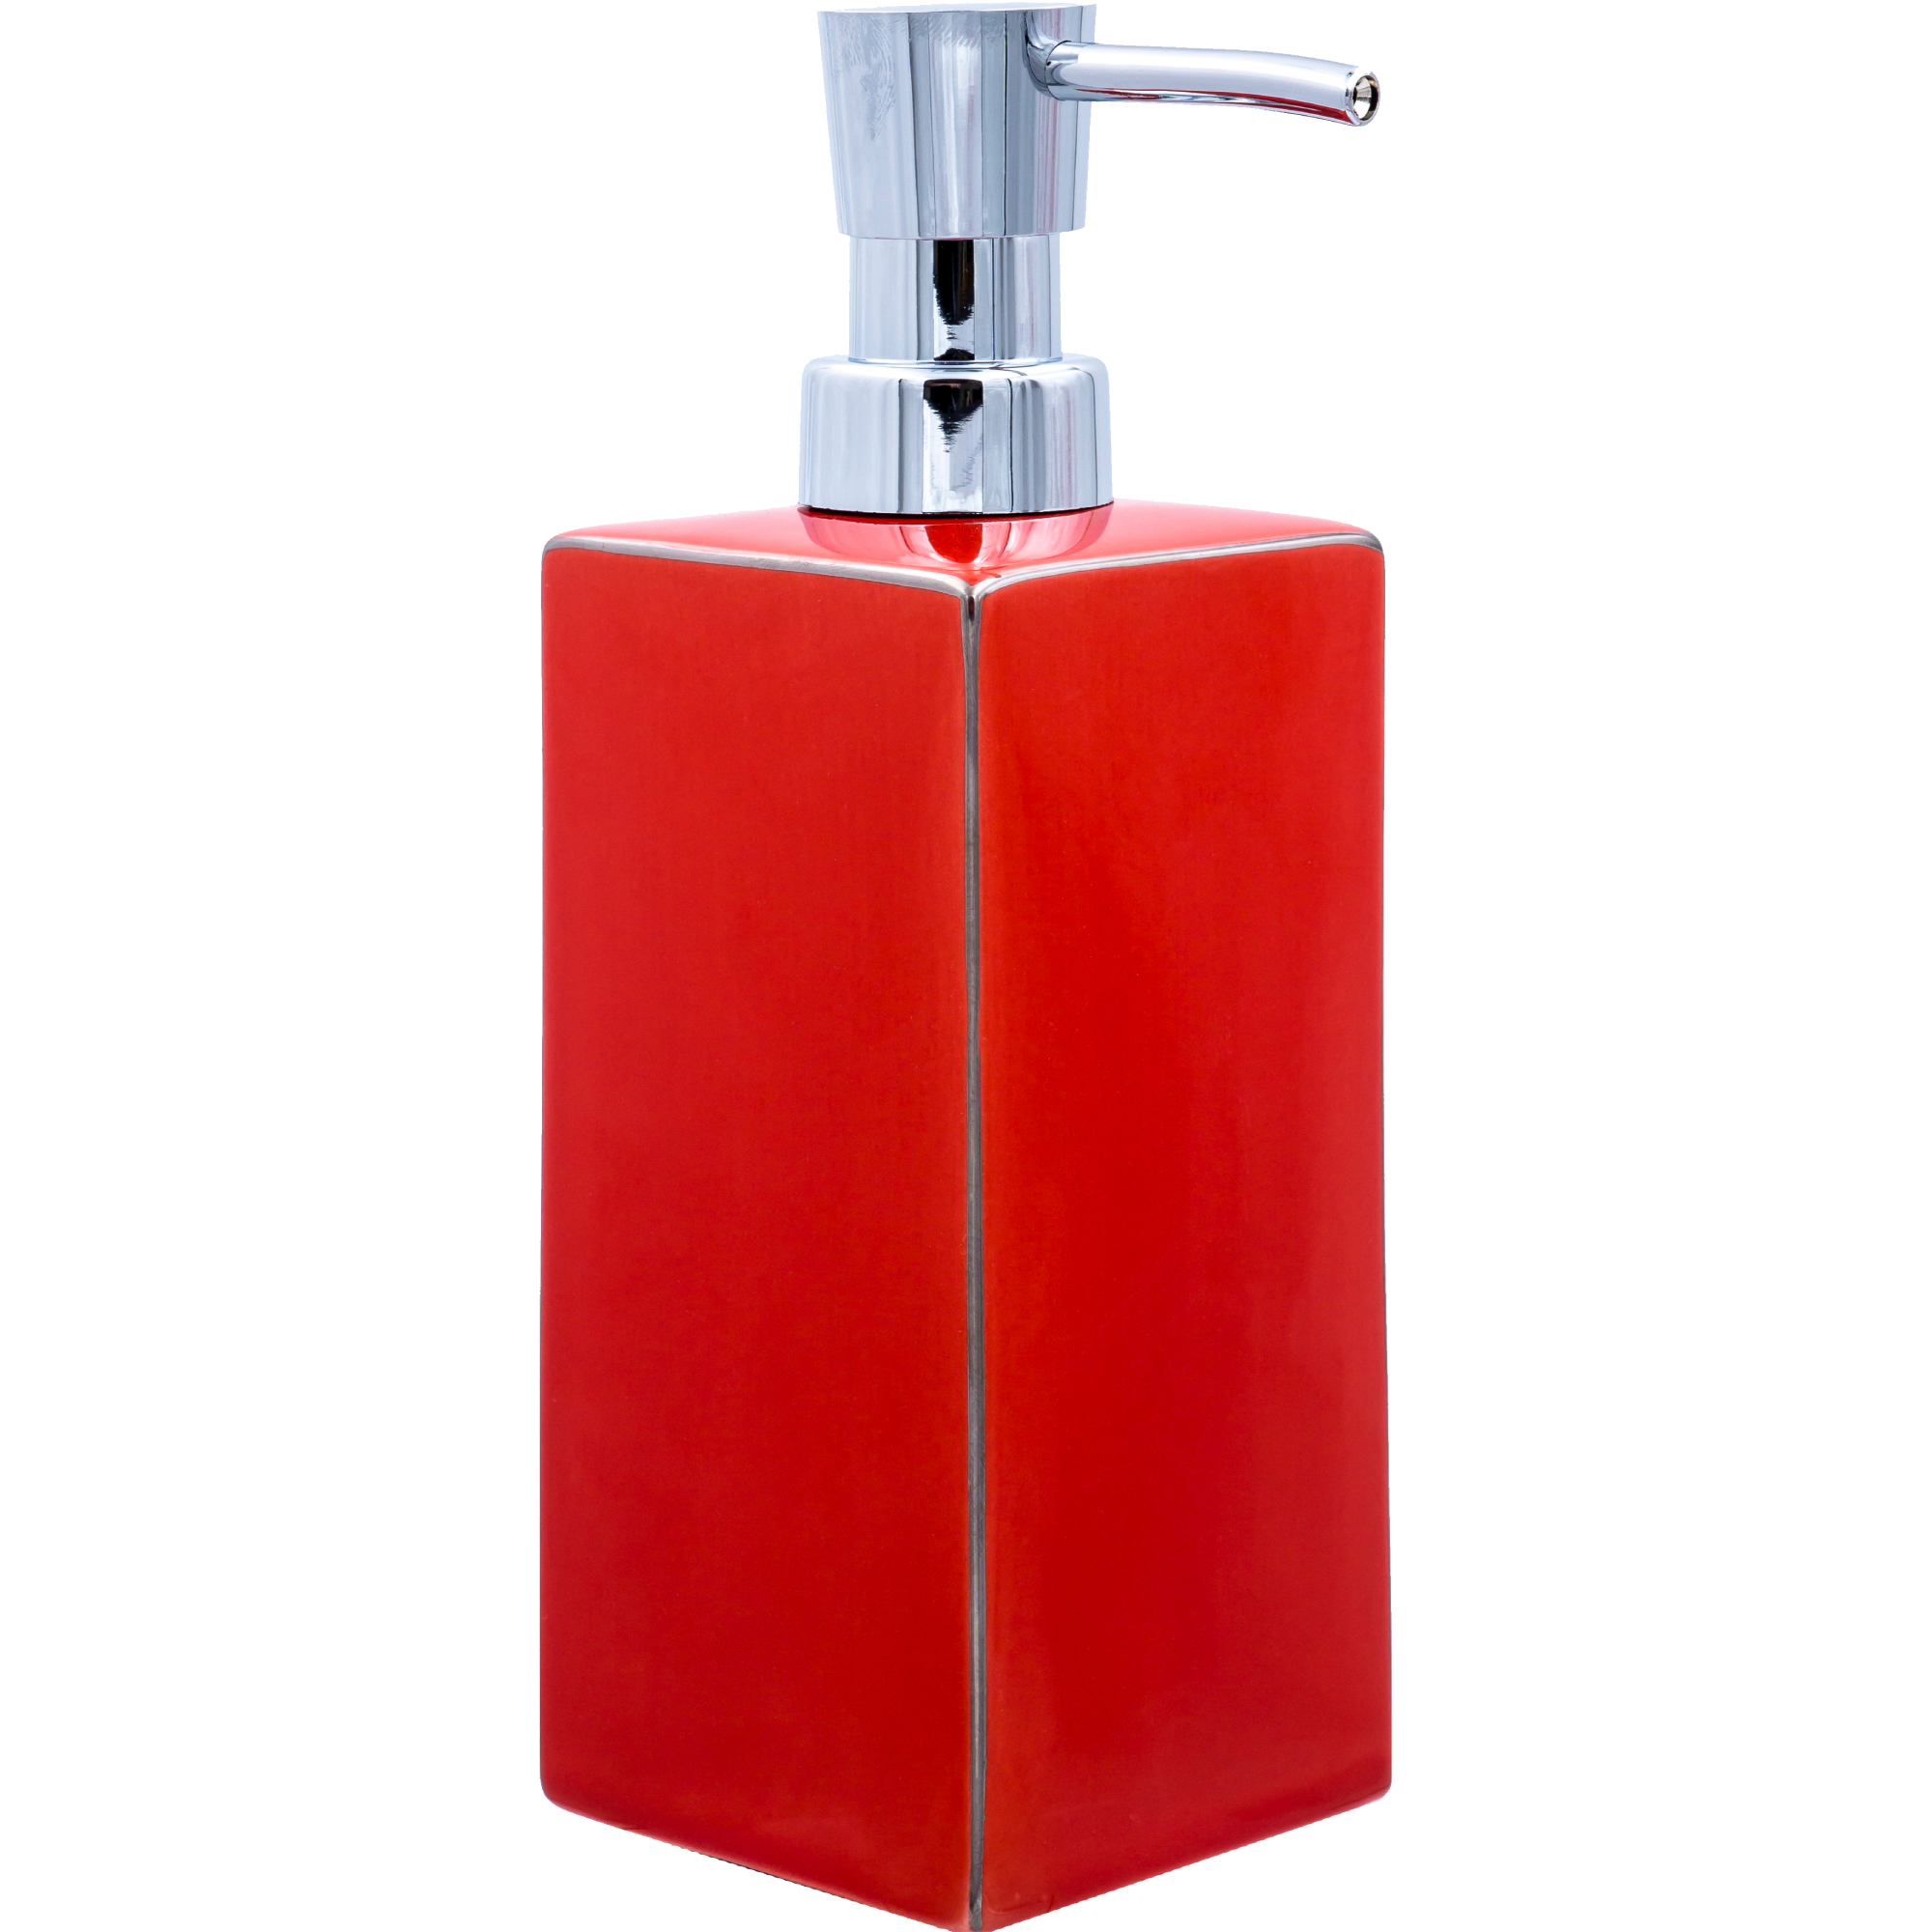 дозатор для жидкого мыла ridder chichi 2241506 красный Дозатор для жидкого мыла Ridder Chichi красный 9х6,5х19,5 см